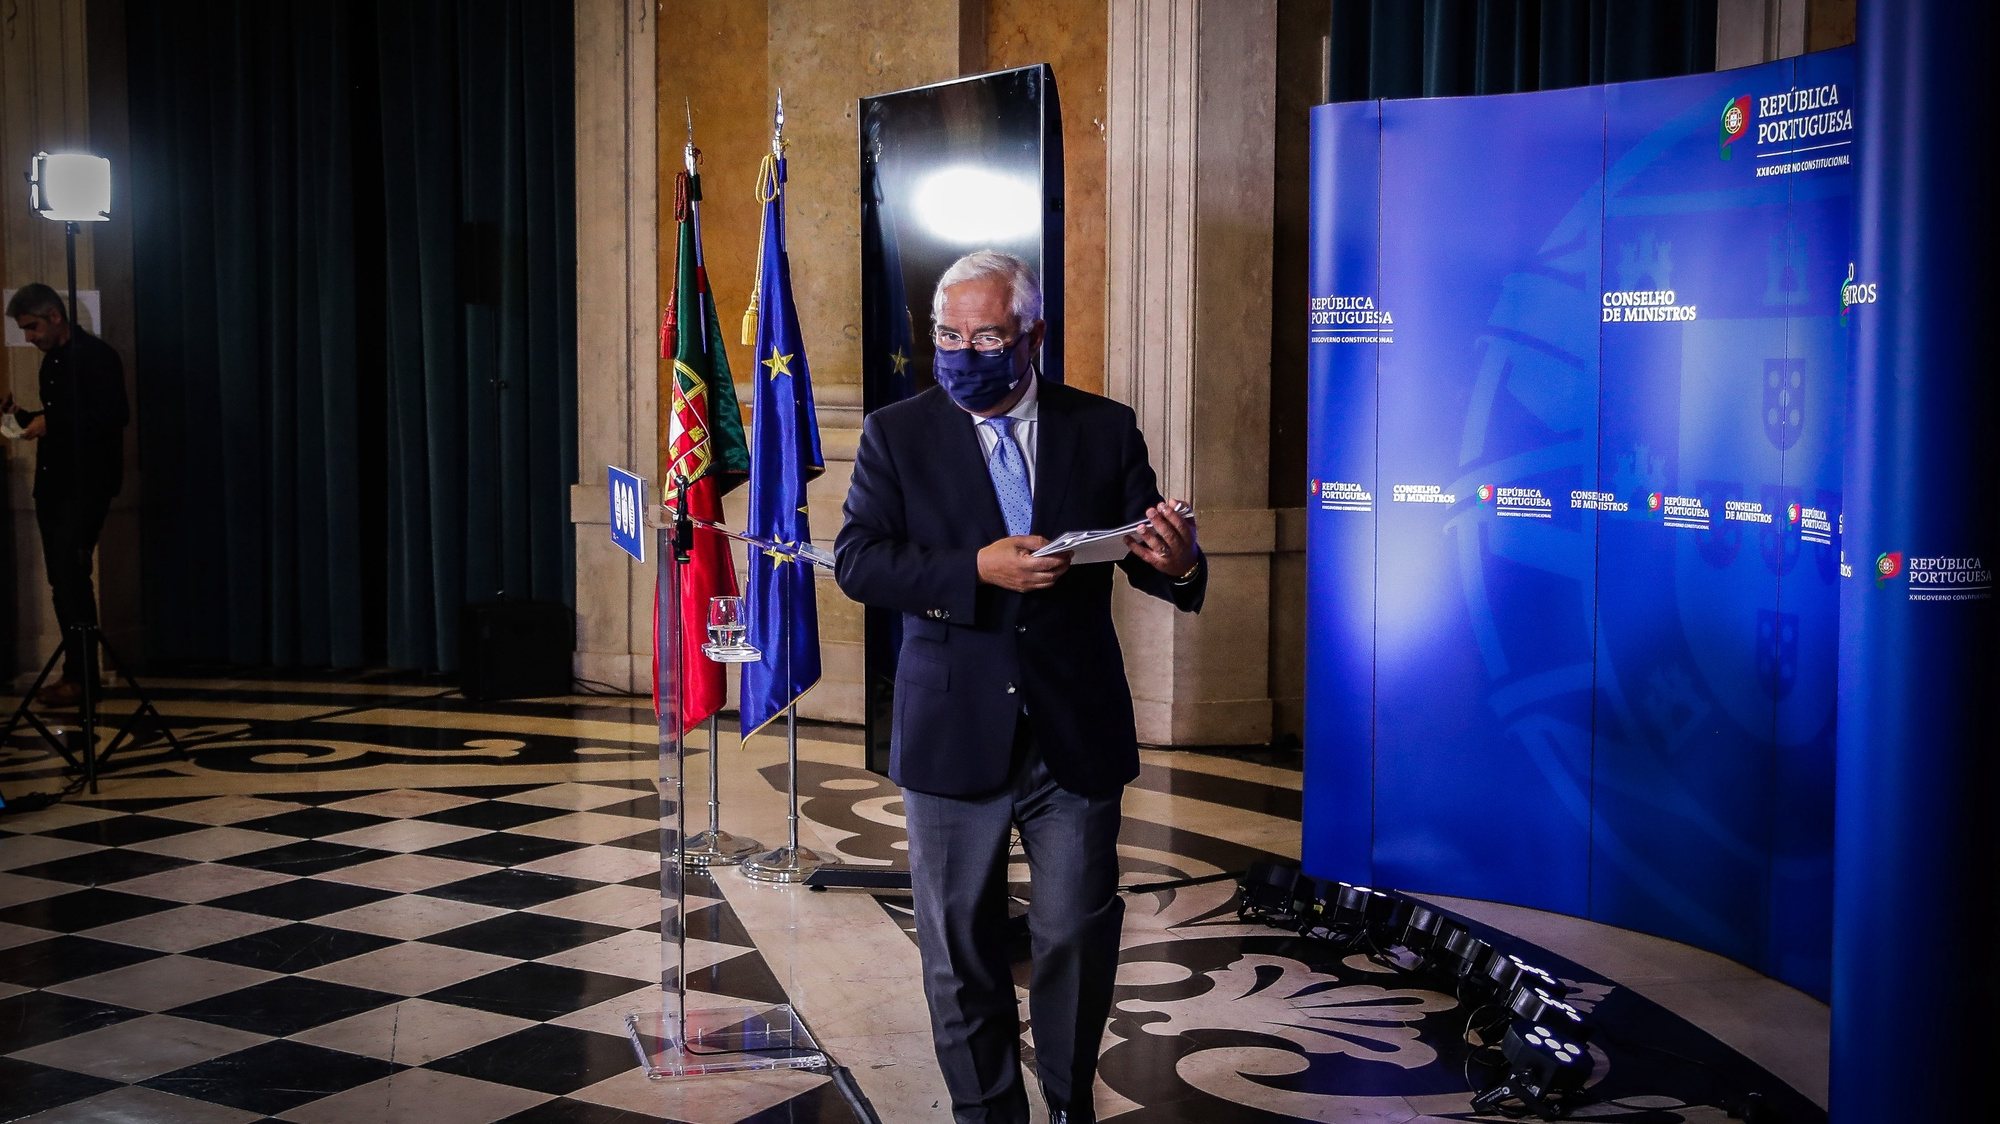 O primeiro-ministro, António Costa, apresenta em conferência de imprensa as conclusões da reunião do Conselho de Ministros extraordinária, realizada no Palácio Nacional da Ajuda, em Lisboa, 21 de novembro de 2020. MÁRIO CRUZ/LUSA